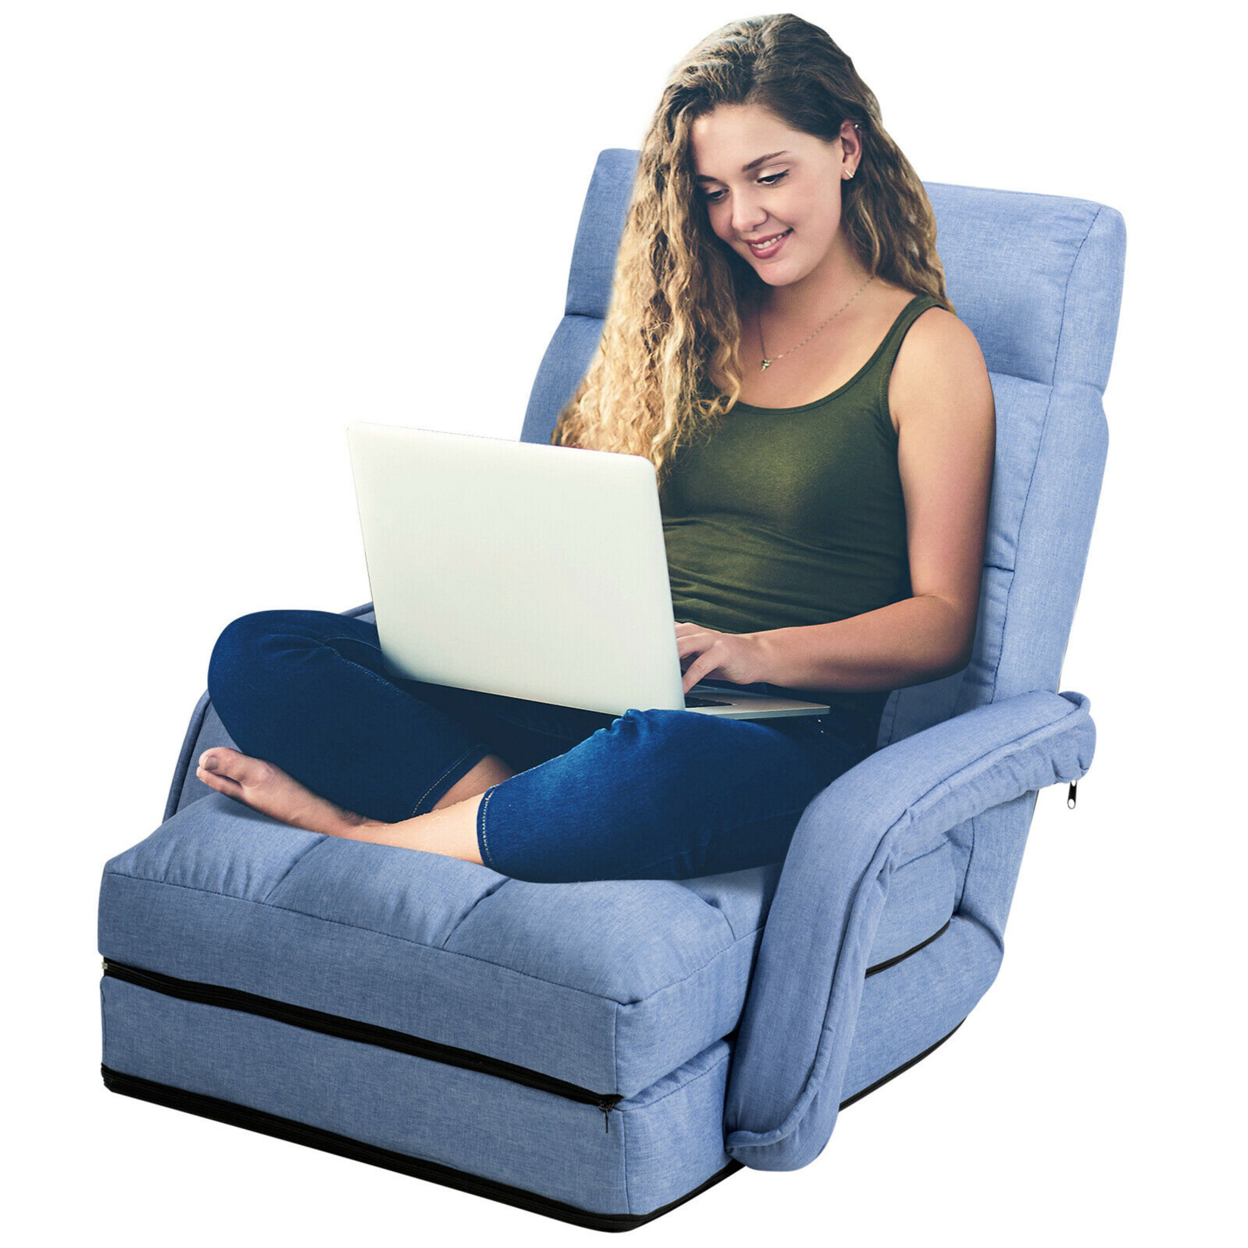 Folding Floor Chair Adjustable Armchair Chaise Lounge Chair Lazy Sofa - Blue